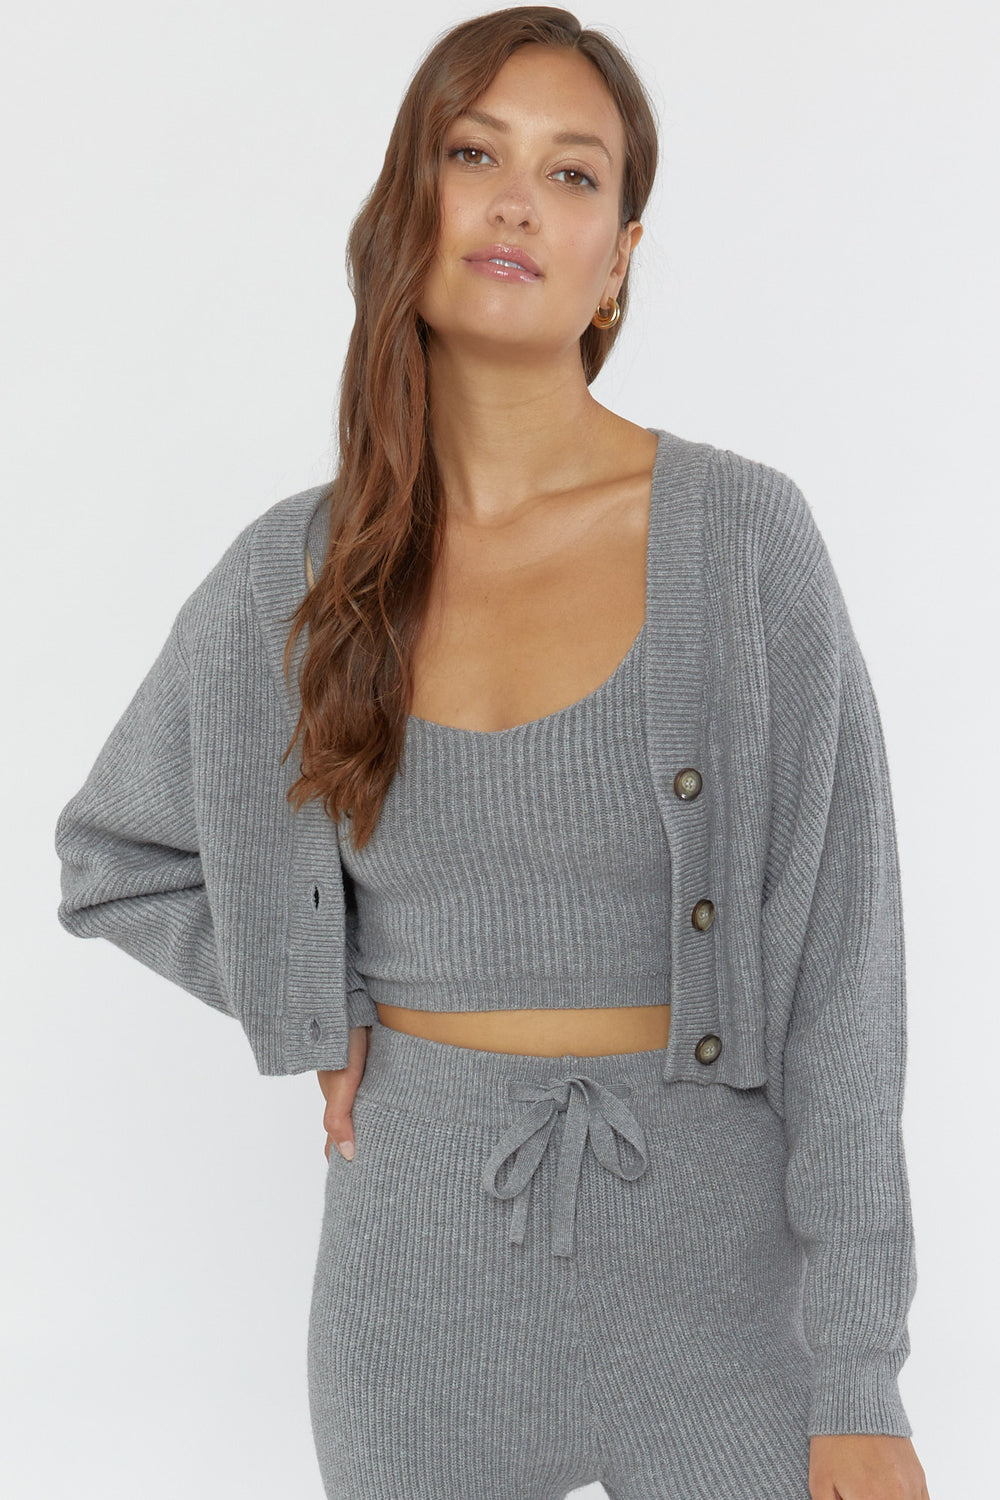 Ribbed Cami & Cardigan Sweater Set Heather Grey